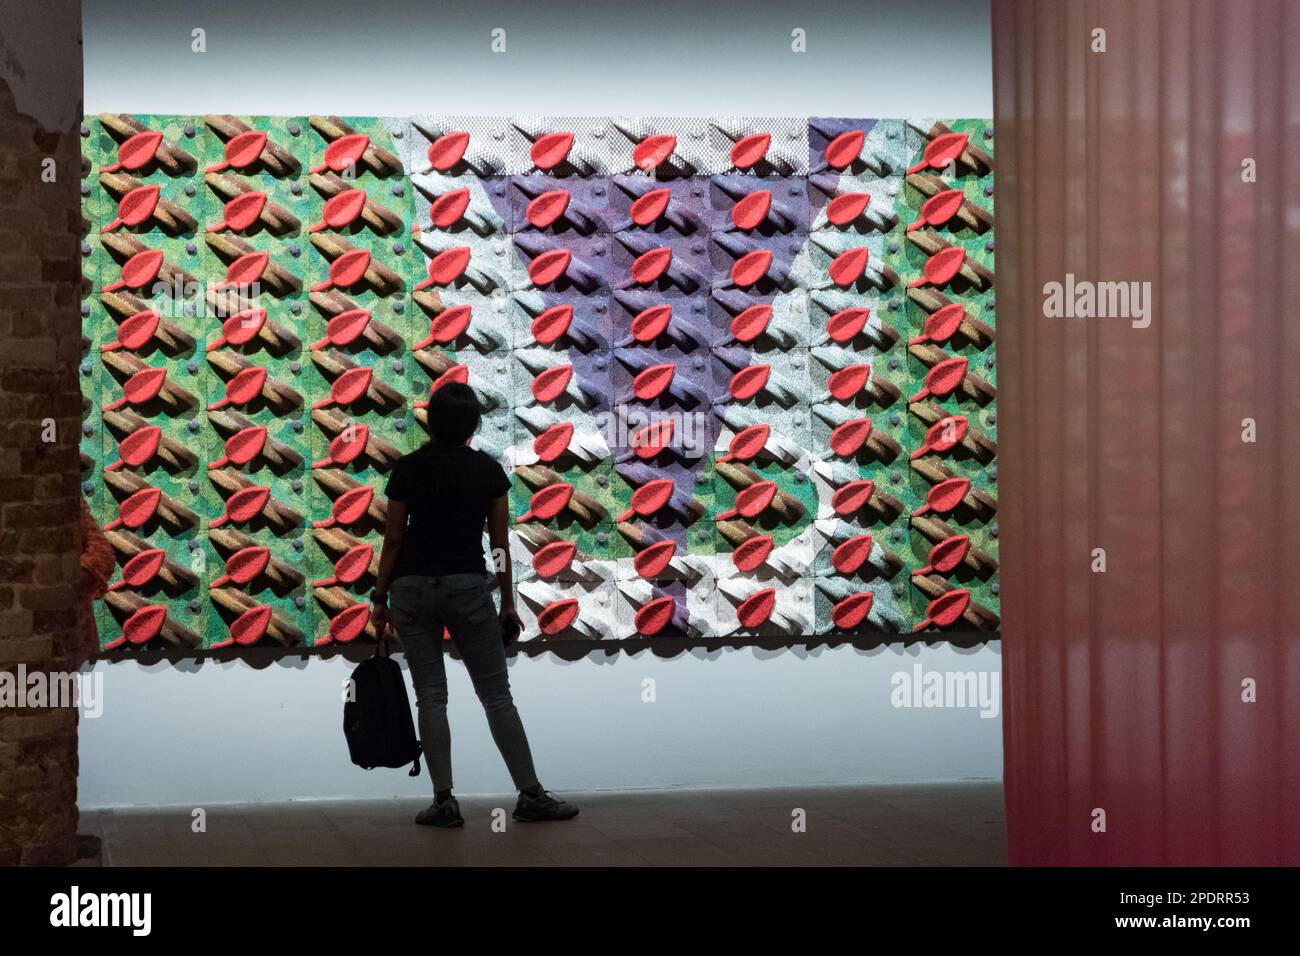 Una visione generale dell'opera foglie rosse dell'artista etiope Elias Sime alla Biennale di Venezia 2022 Foto Stock